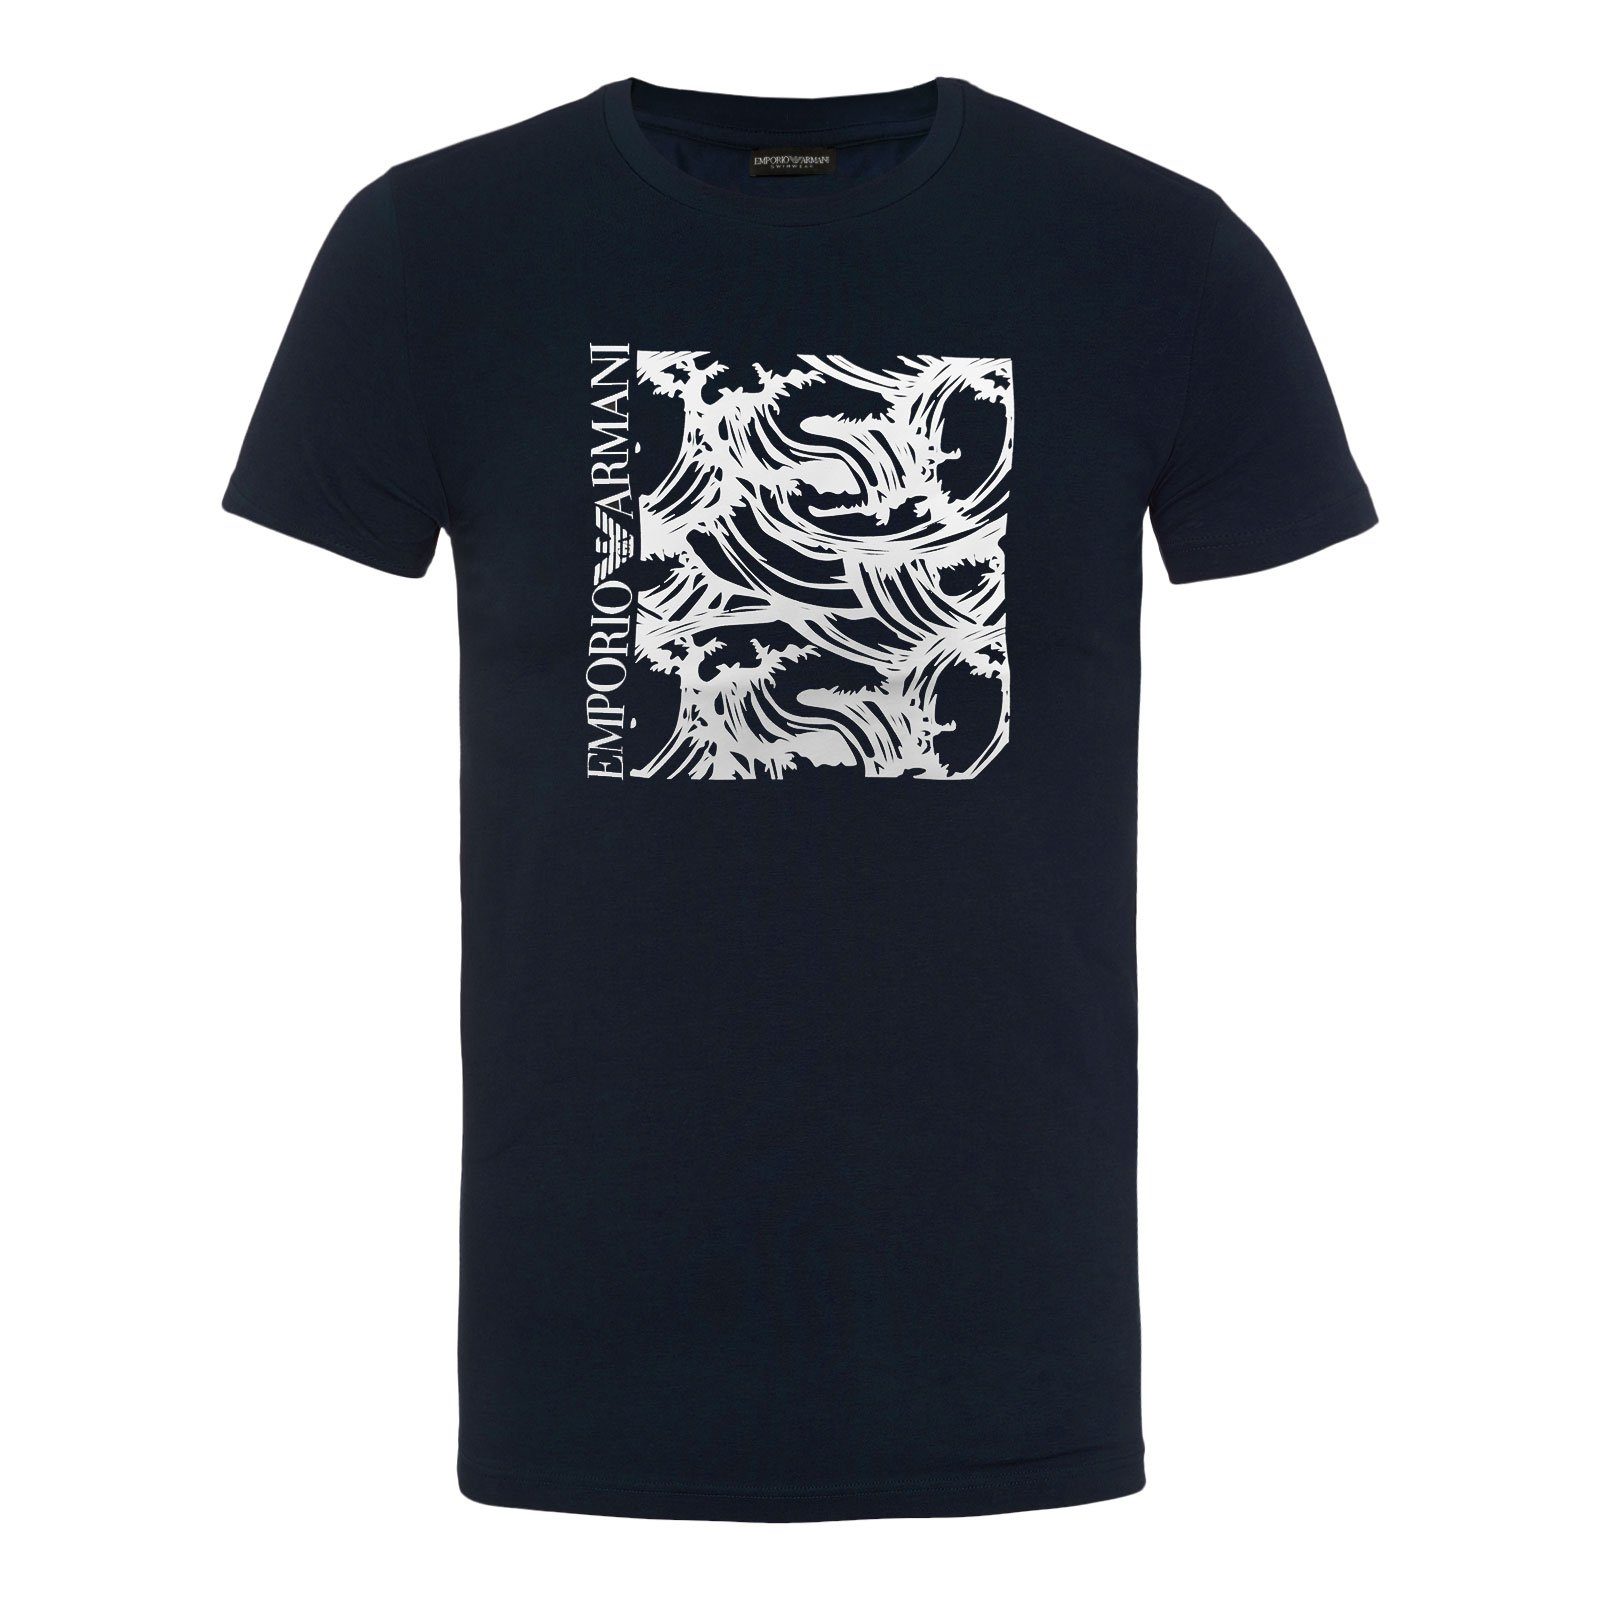 Emporio Armani T-Shirt Crew Neck T-Shirt Beachwear mit modischem Print 18436 navy wave